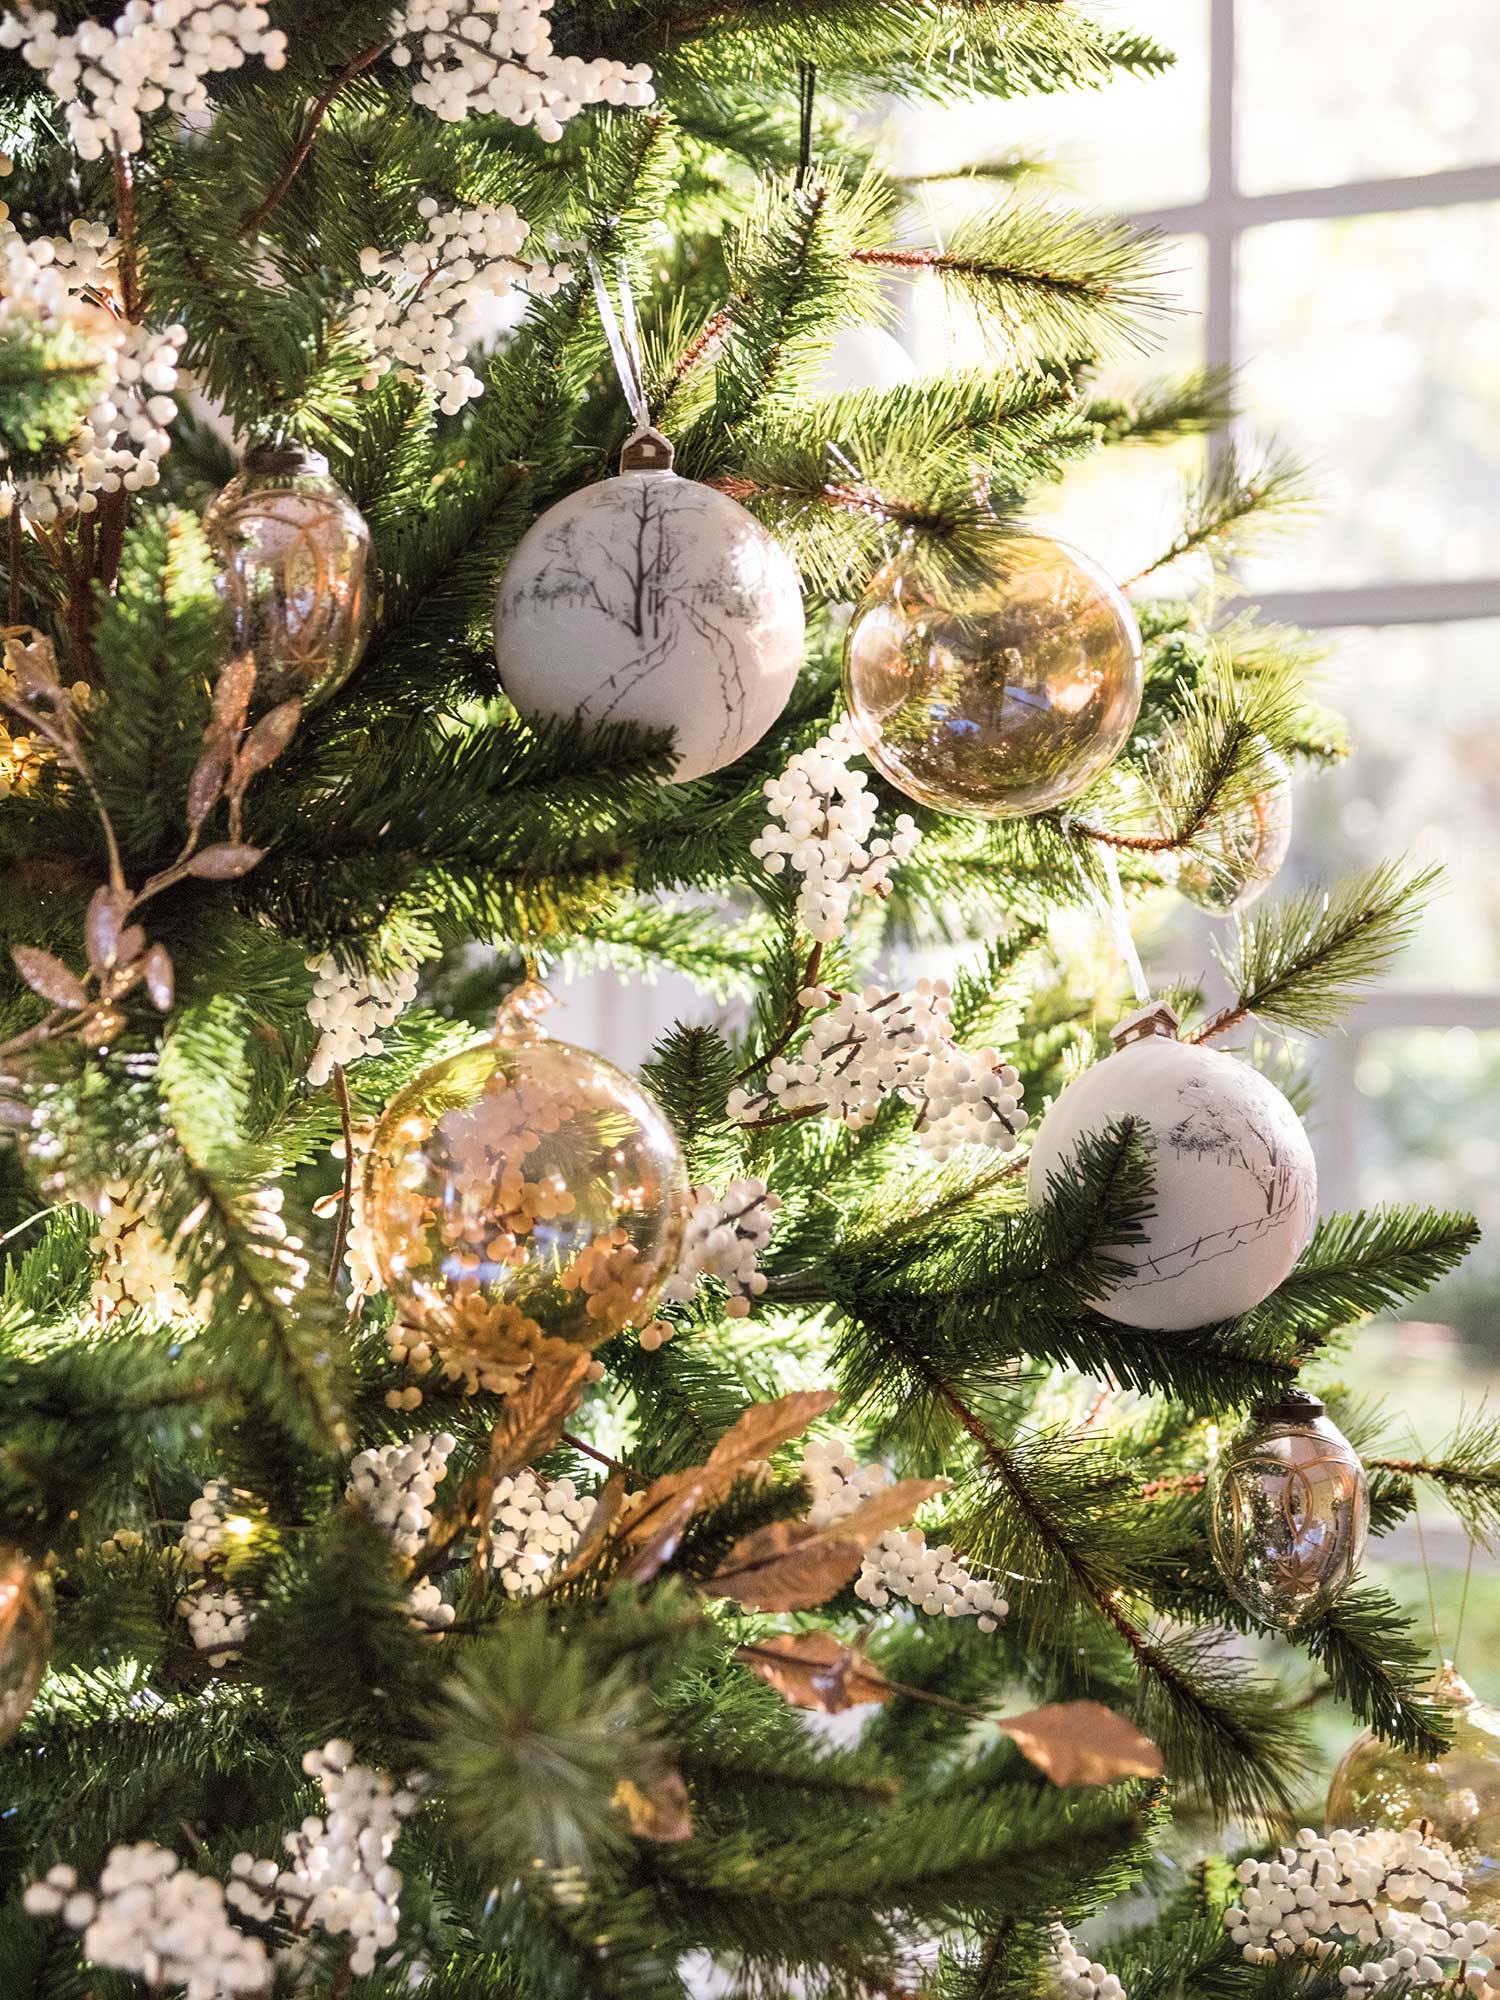 XHXSTORE 2PCS Rama de Navidad Artificial de Plástico con Bayas y Conos de Pino Decoracion Navidad para Centro de Mesa Chimenea Árbol de Navidad DIY-50cm 